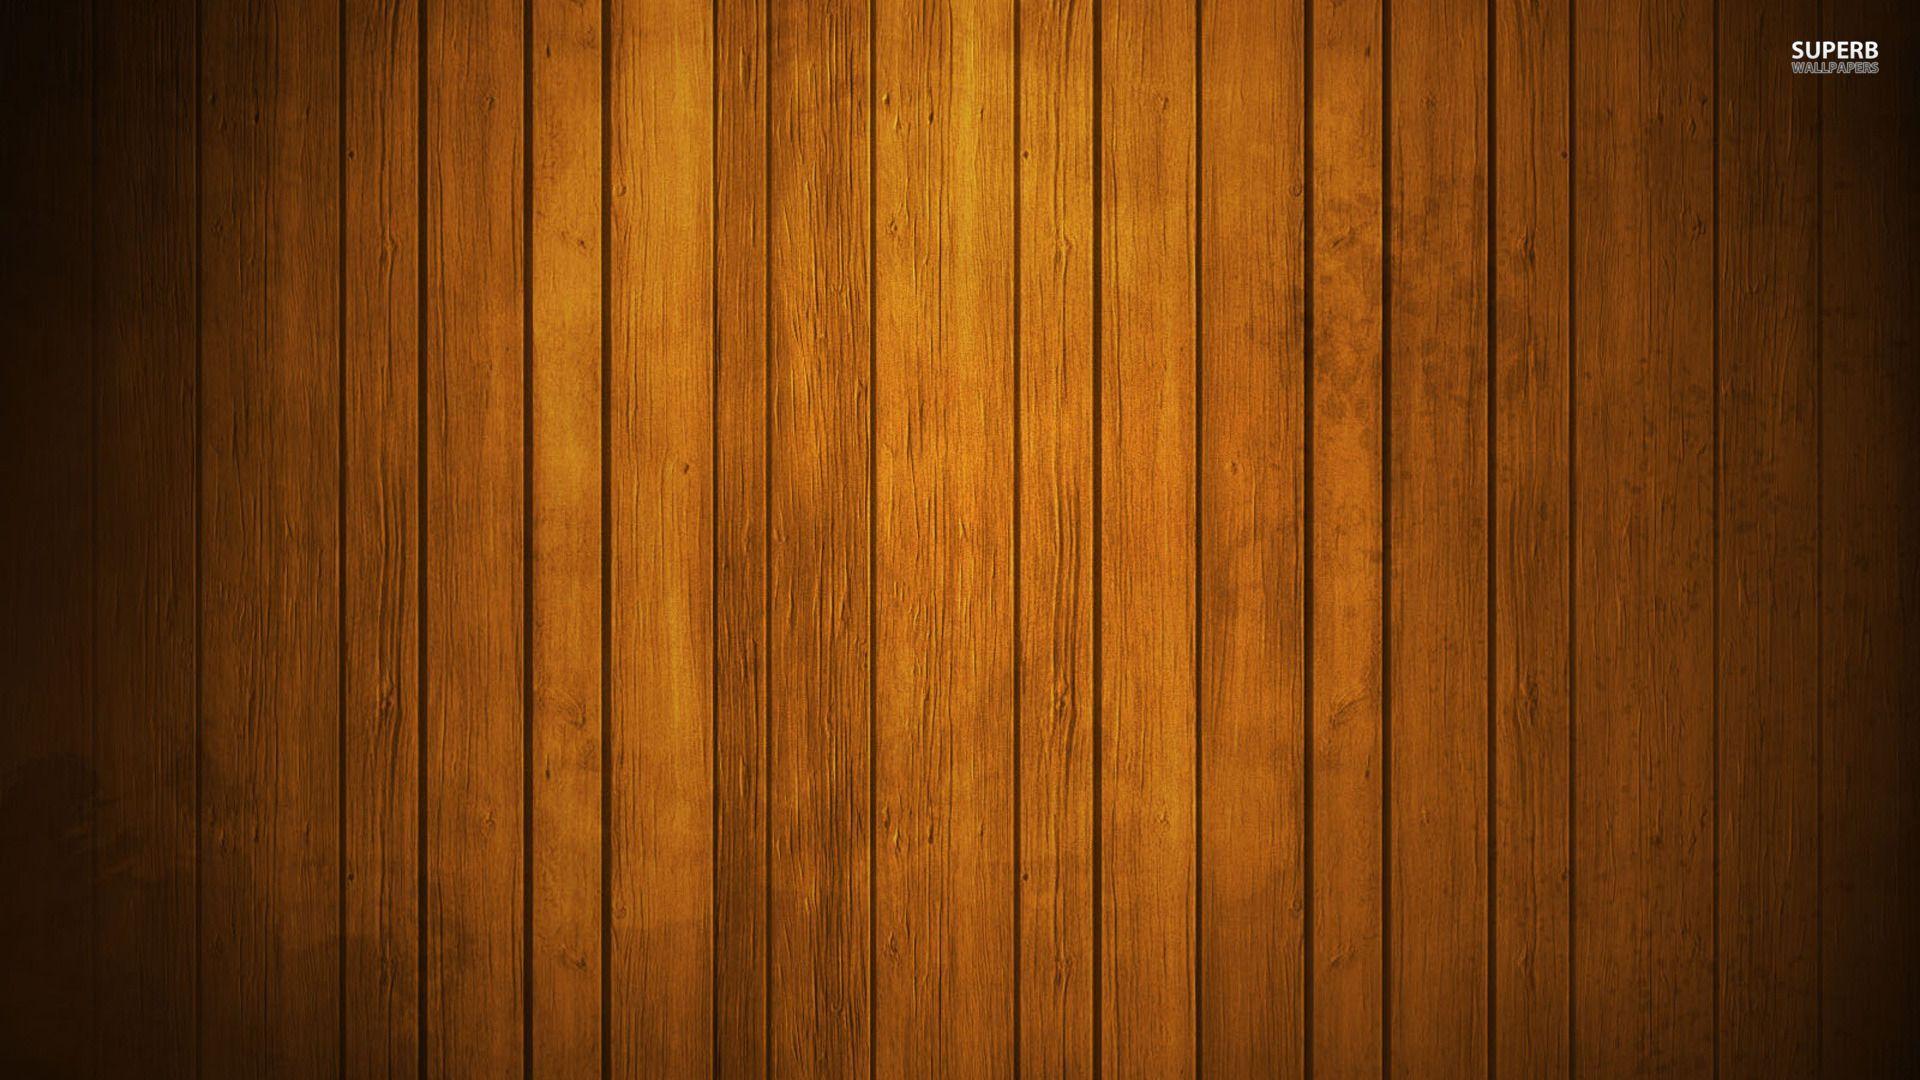 Nền gỗ (Wooden Backgrounds): Nền gỗ là một lựa chọn tuyệt vời để trang trí cho thiết bị của bạn. Với độ bền cao và thiết kế tinh tế, phù hợp với nhiều phong cách và mục đích. Hãy truy cập để tìm hiểu thêm về các mẫu nền gỗ đẹp mắt.